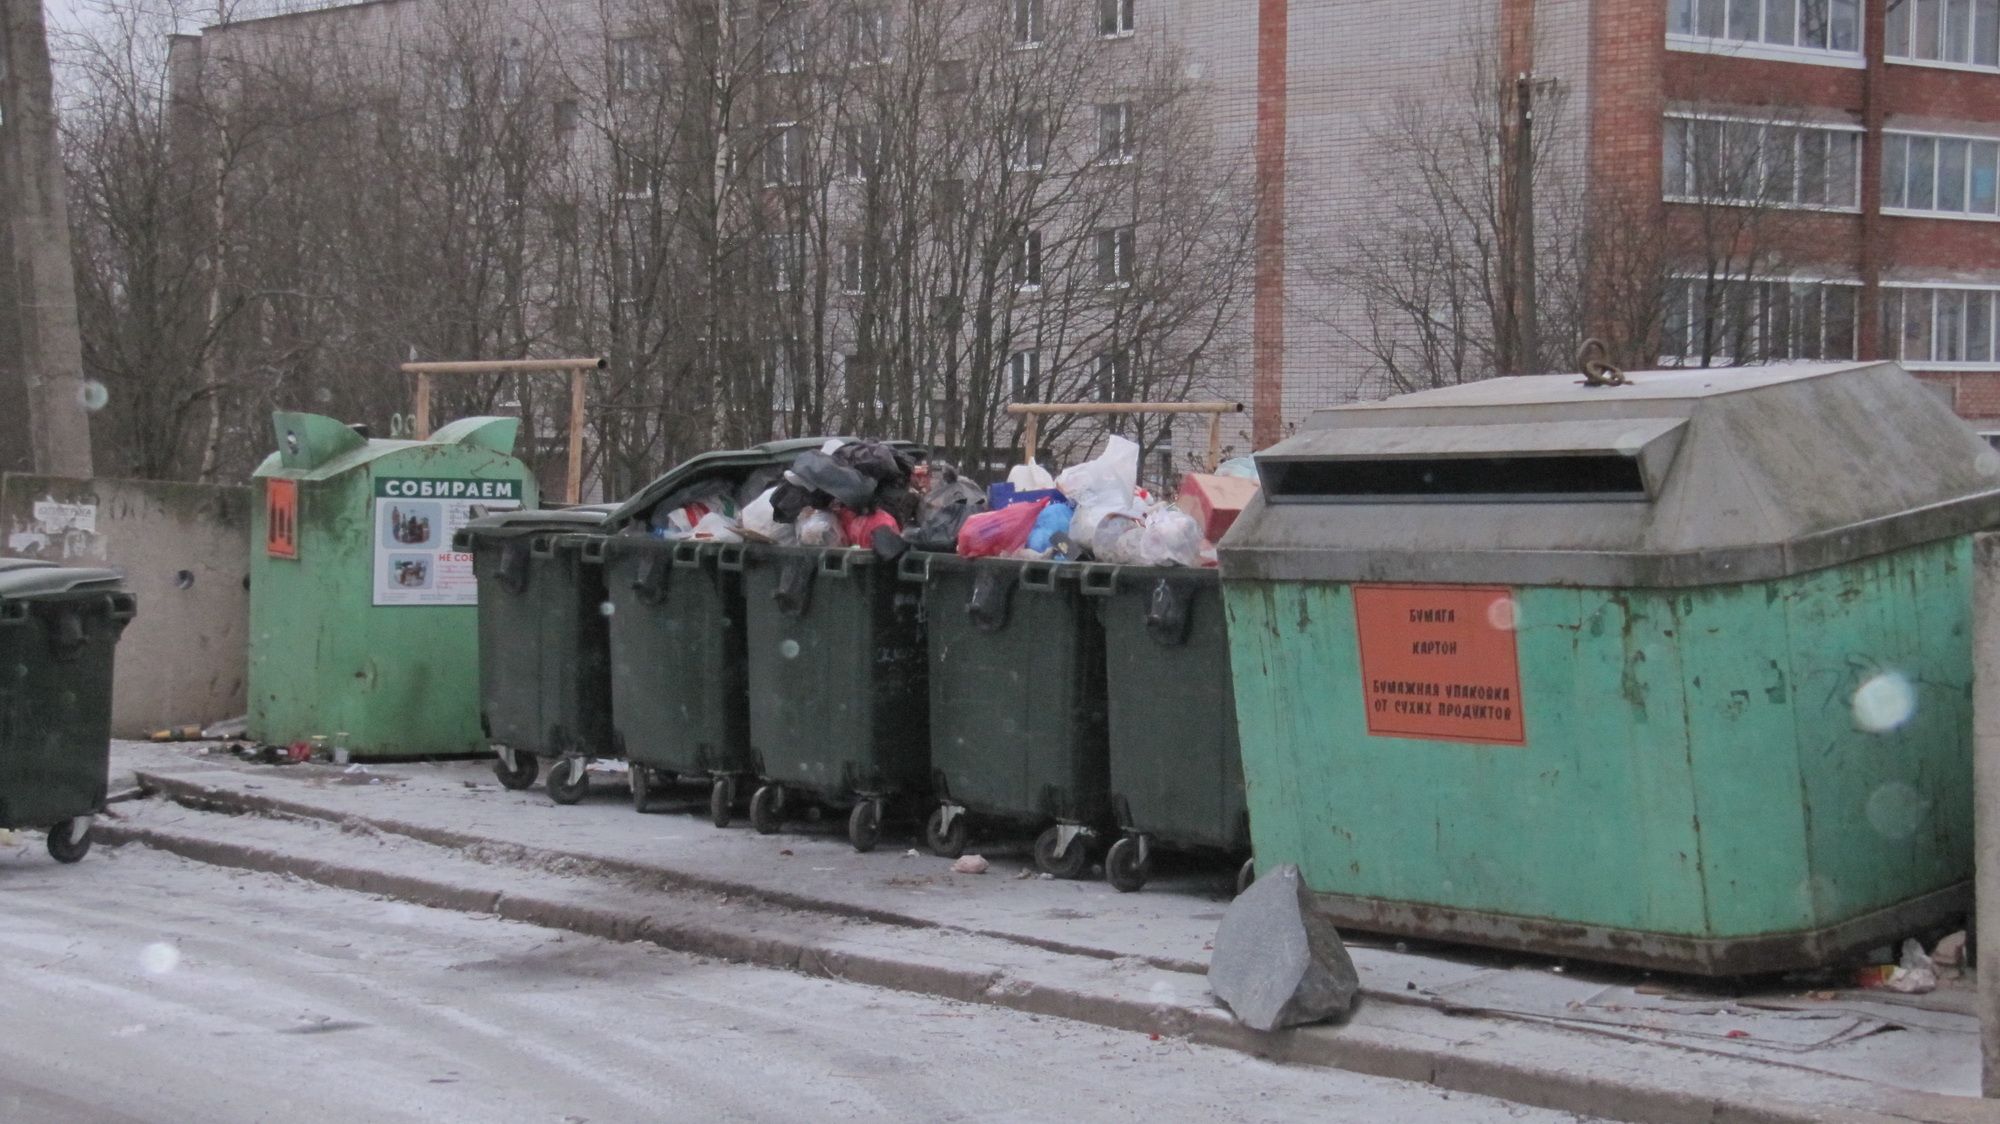 Petroskoilaiset pahoittelevat jätepisteiden roskaantumista. Kuva: Oleg Gerasjuk